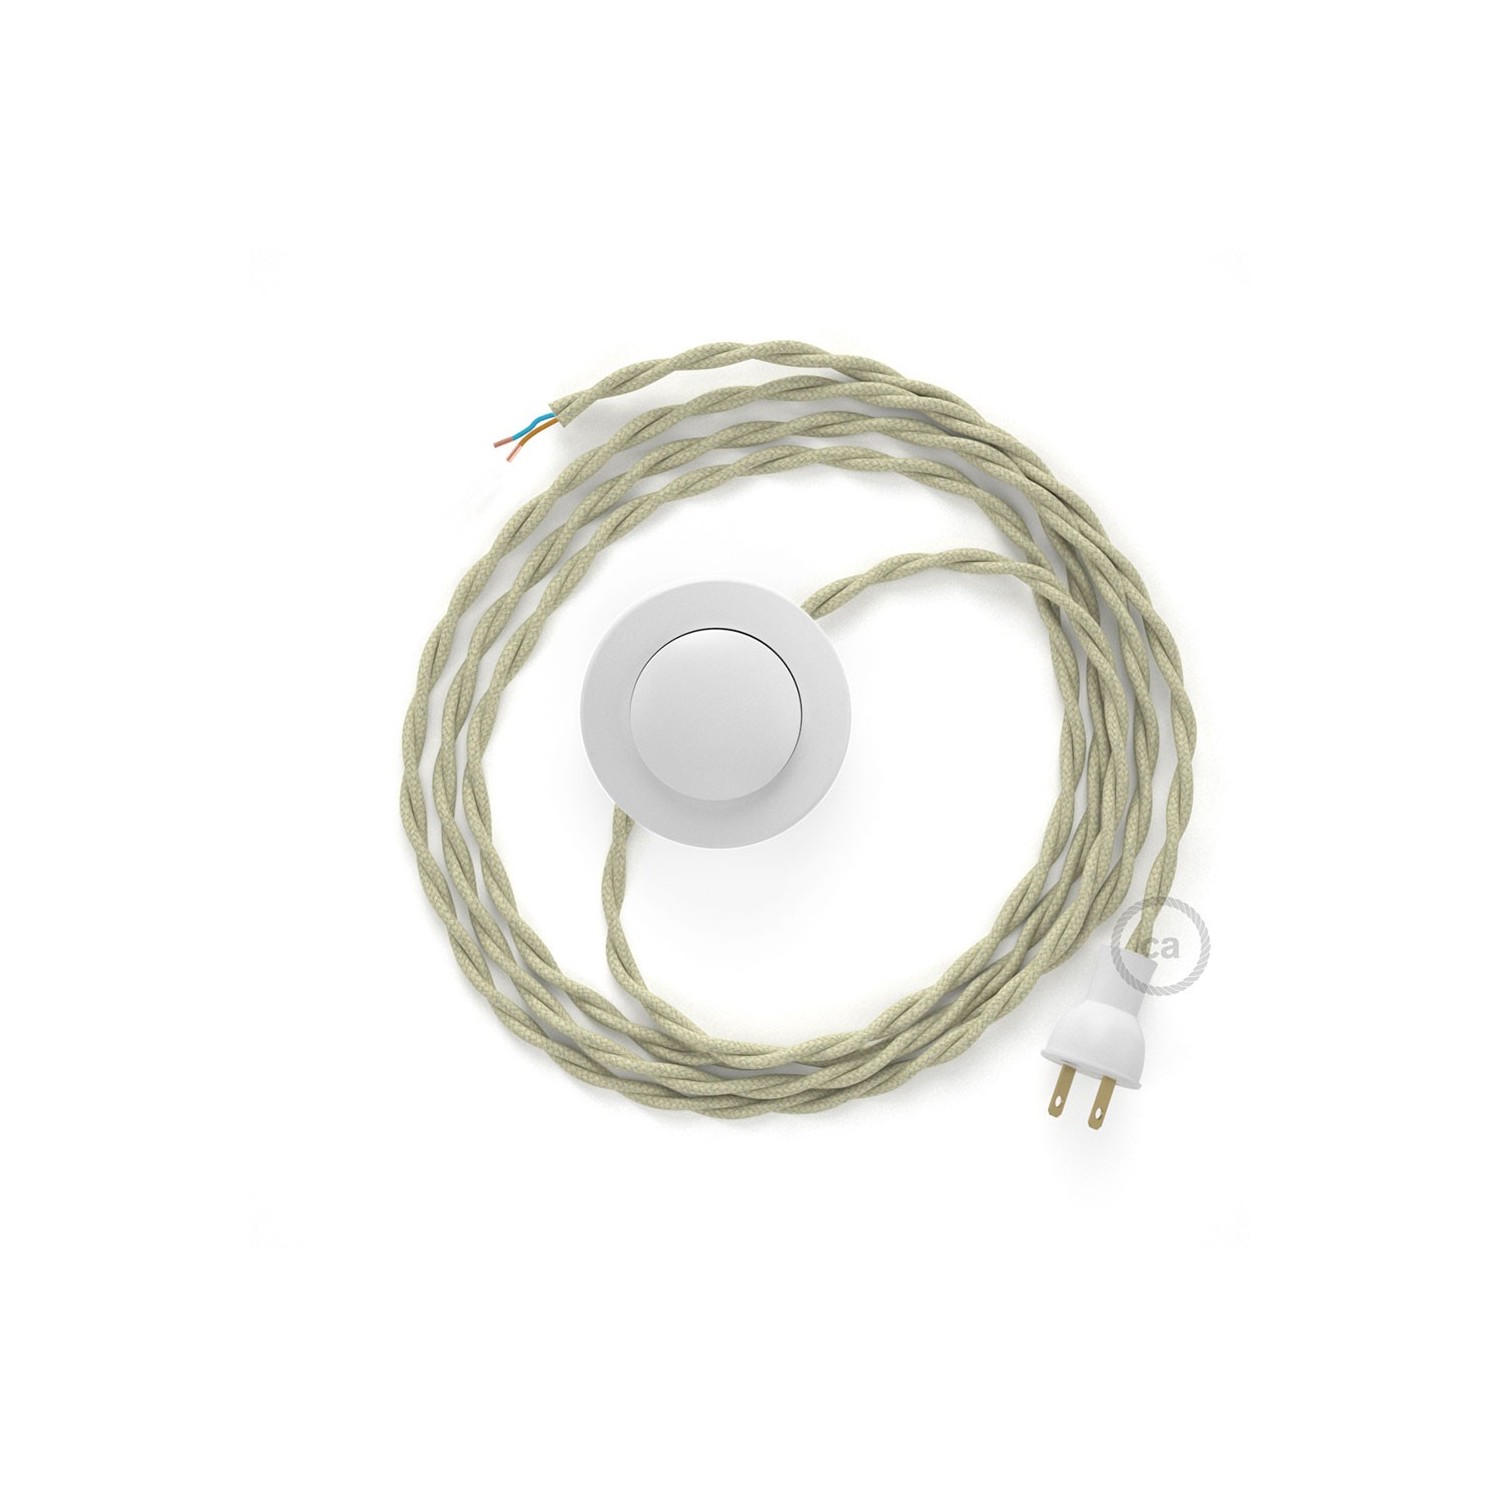 Cableado para lámpara de piso, cable TC43 Algodón Gris Pardo 3 m. Elige tu el color de la clavija y del interruptor!